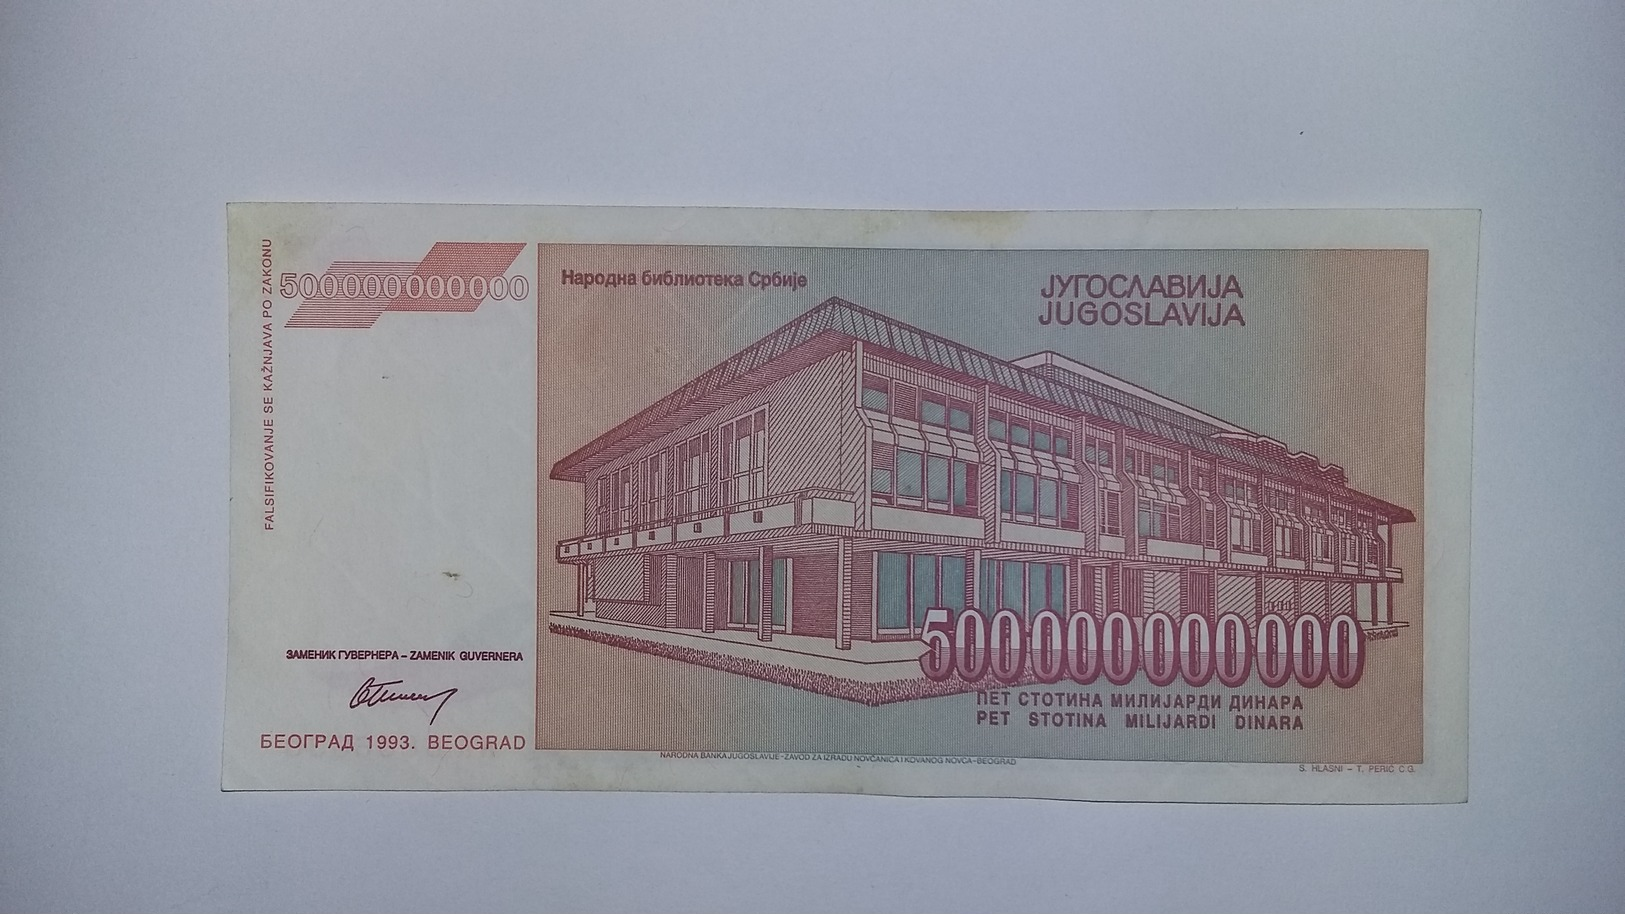 Yugoslavia Inflation Banknote - Yugoslavia